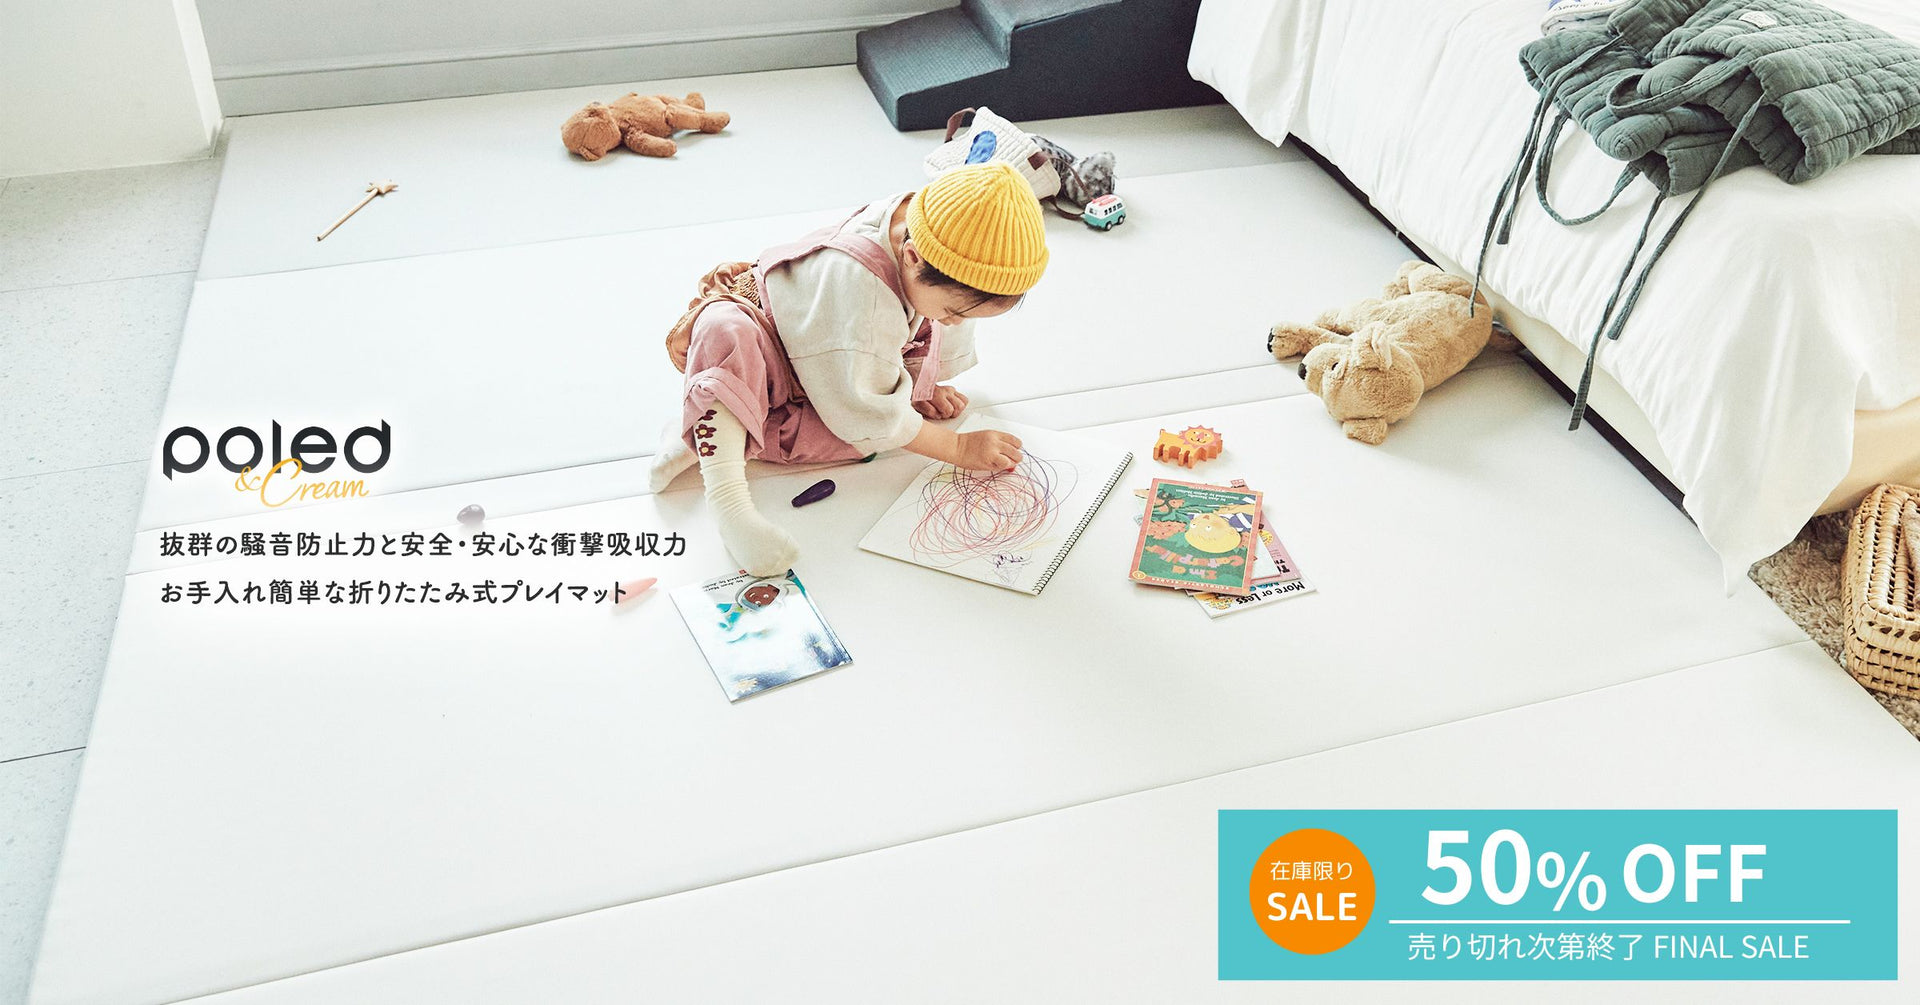 韓国発のプレミアム育児用品「折りたたみ式マット」